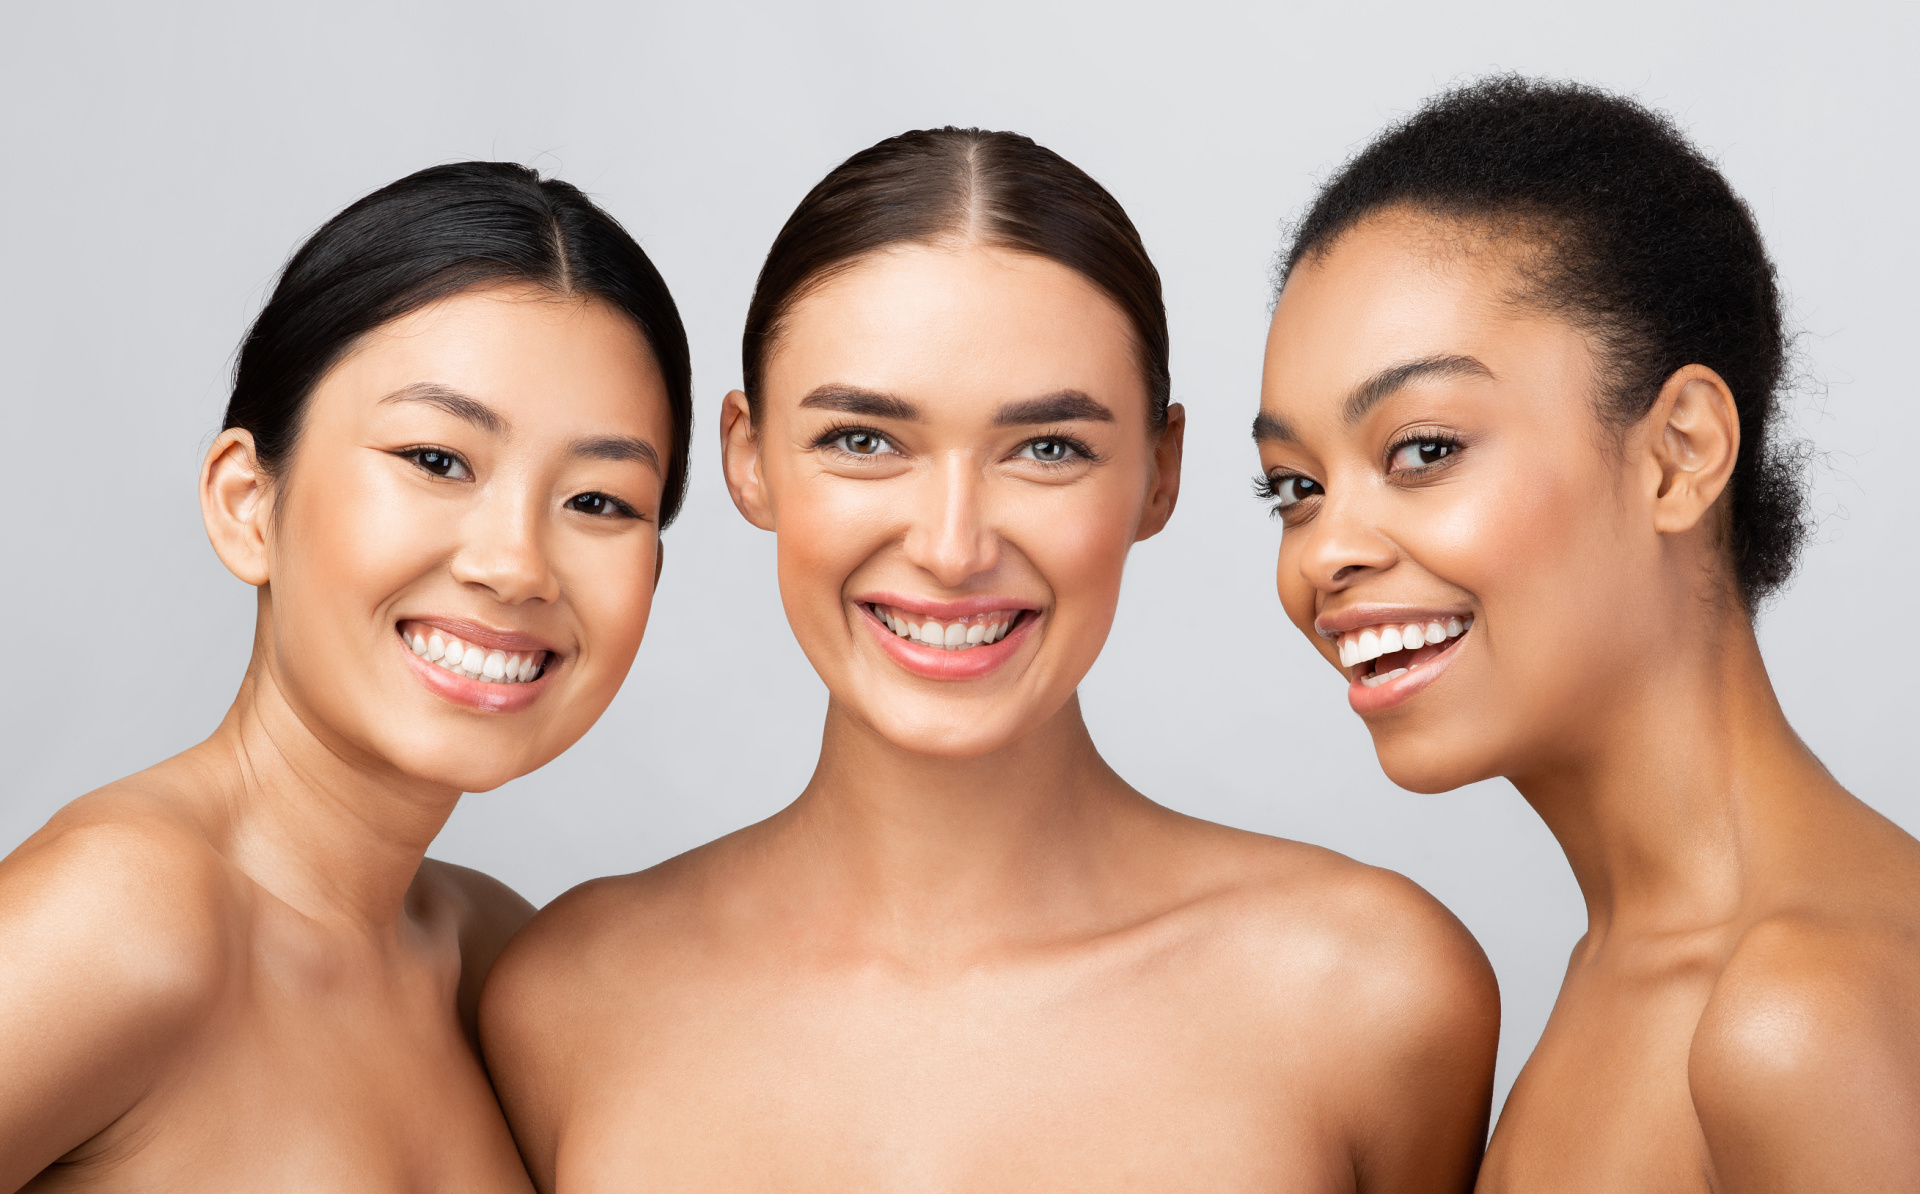 three diverse models women smiling posing shirtles2